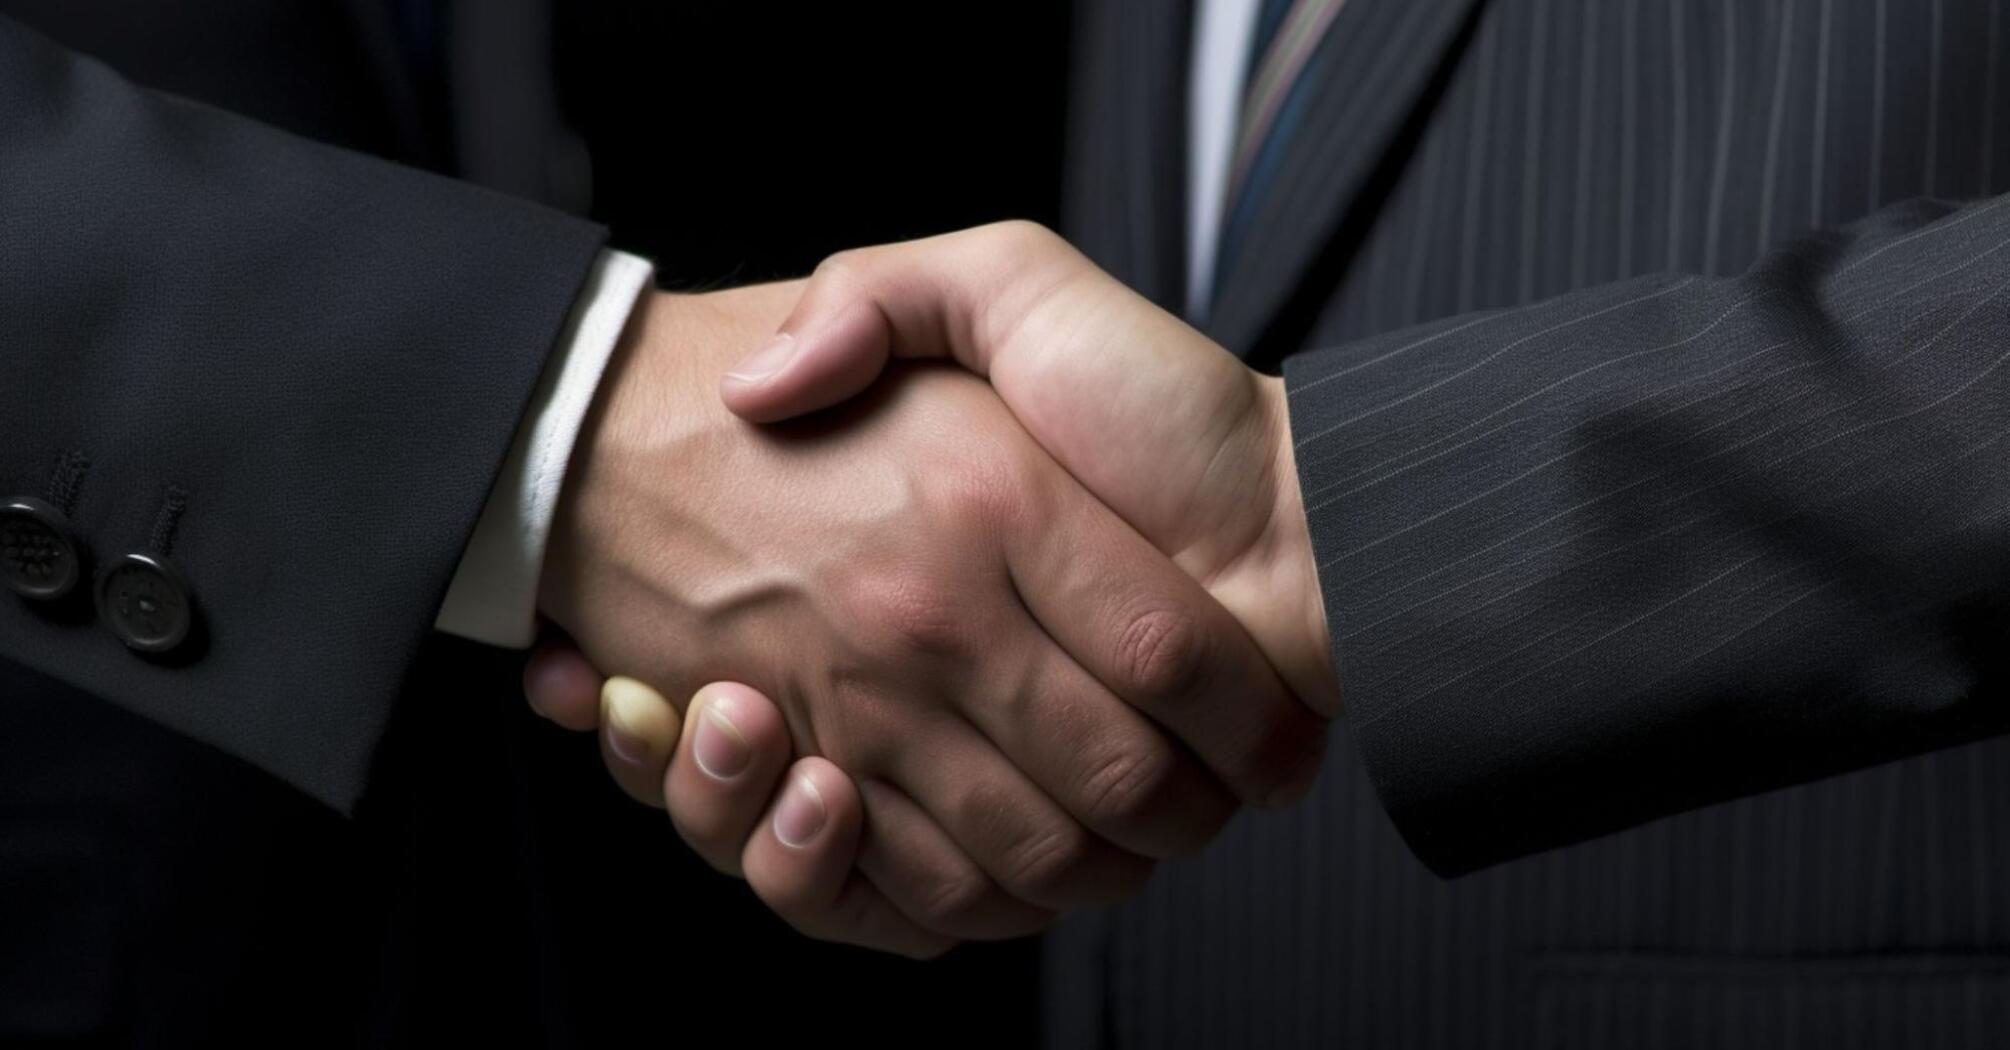 Handshake of two men